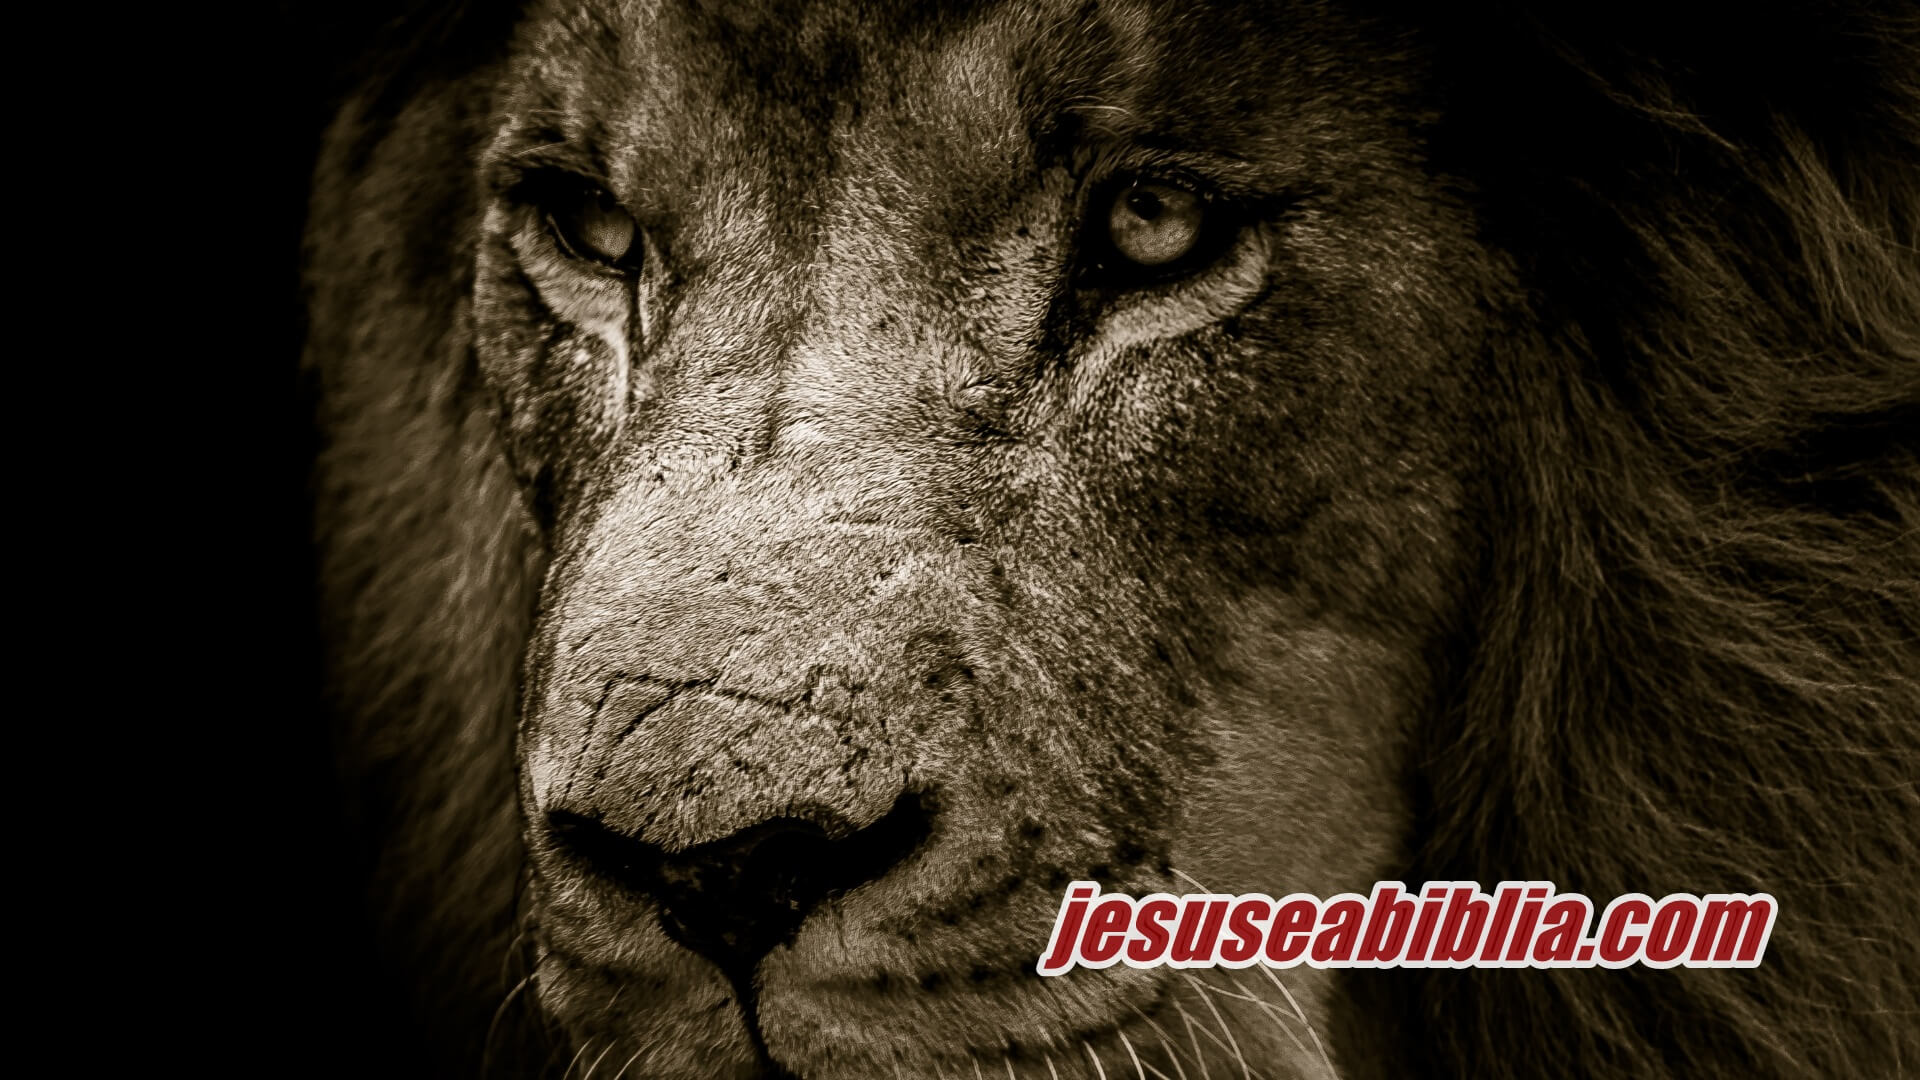 Daniel na Cova dos Leões e o Cuidado de Deus